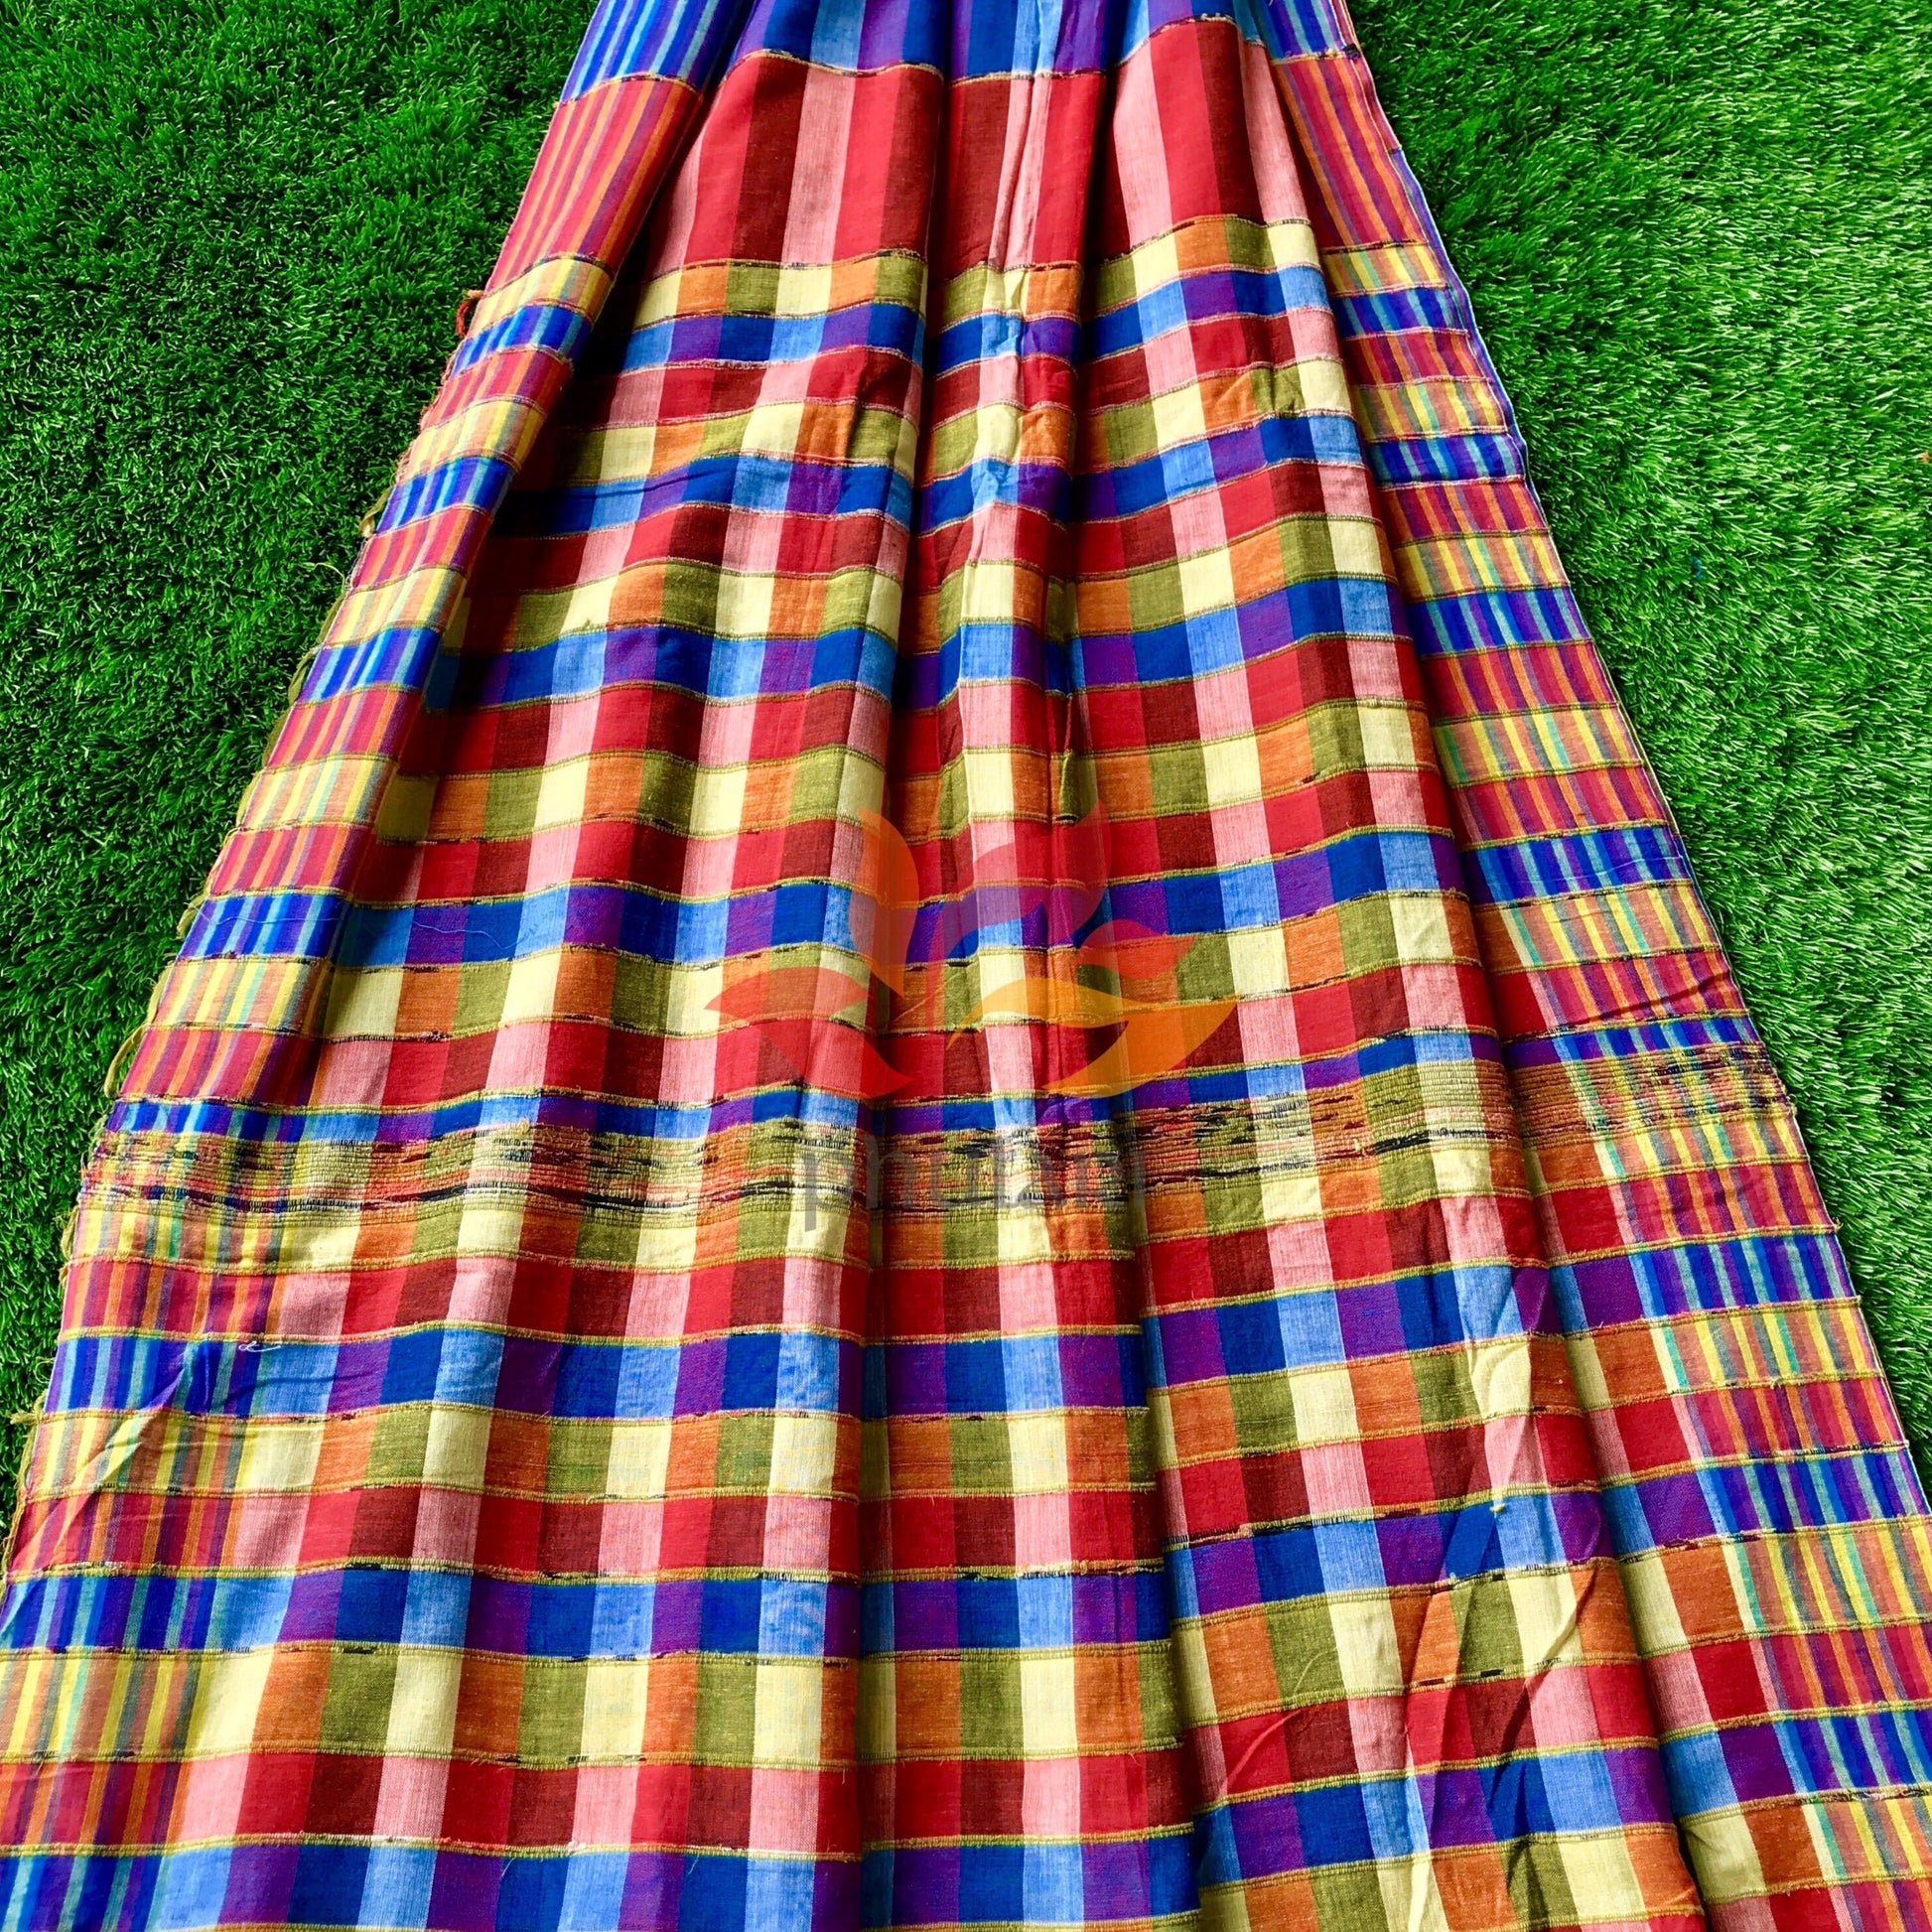 Khesh Saree Handloom Cotton Checks - Red Blue - Phulari 